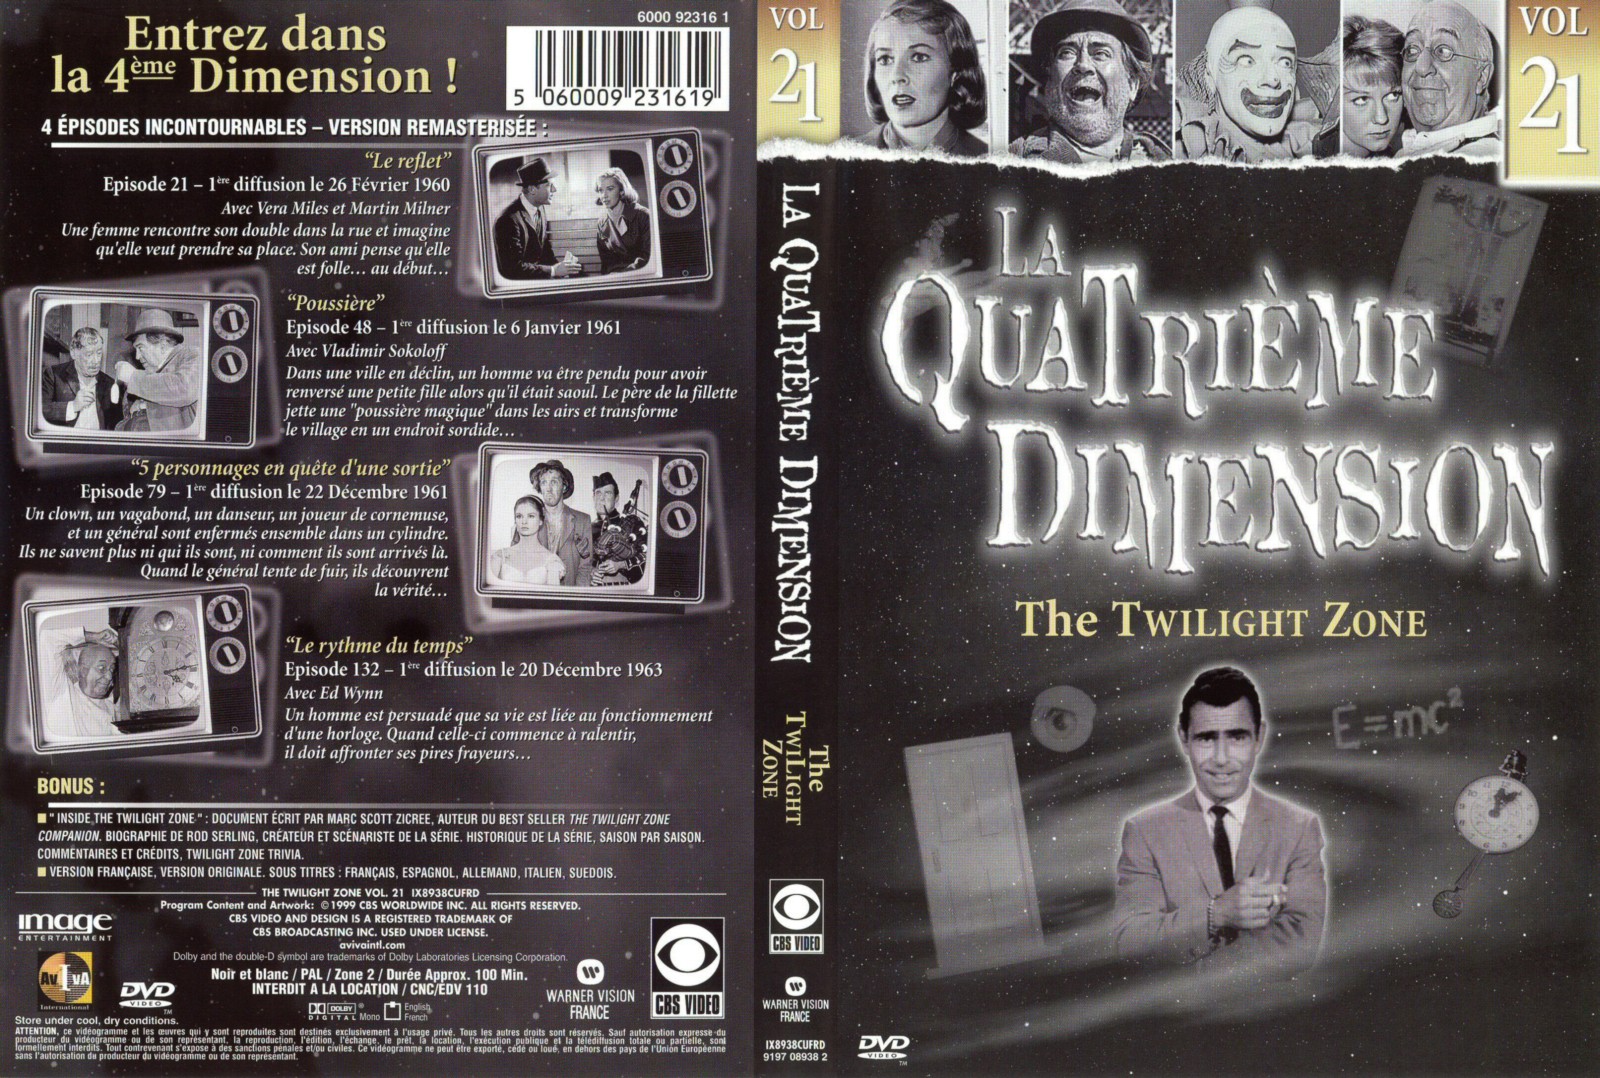 Jaquette DVD La quatrieme dimension vol 21